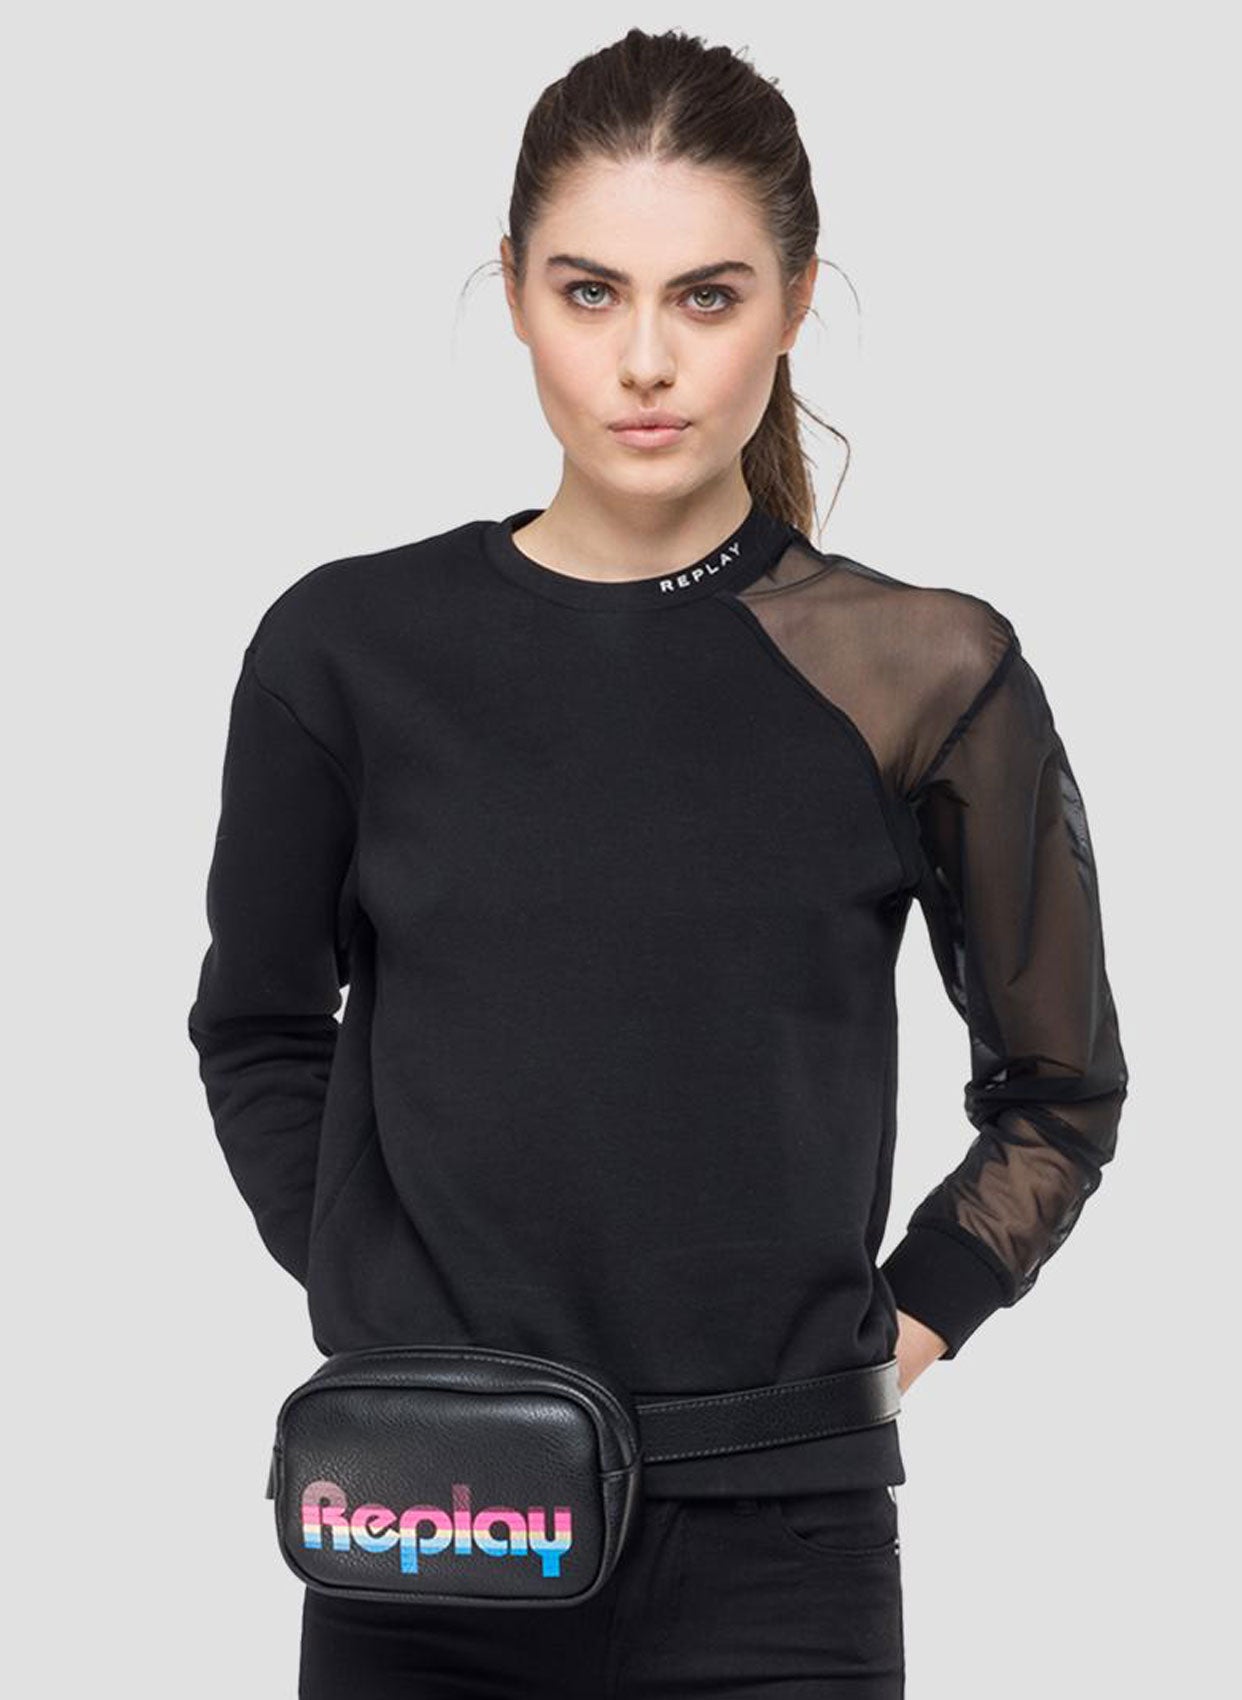 Replay Sweatshirt-Libas Trendy Fashion Store